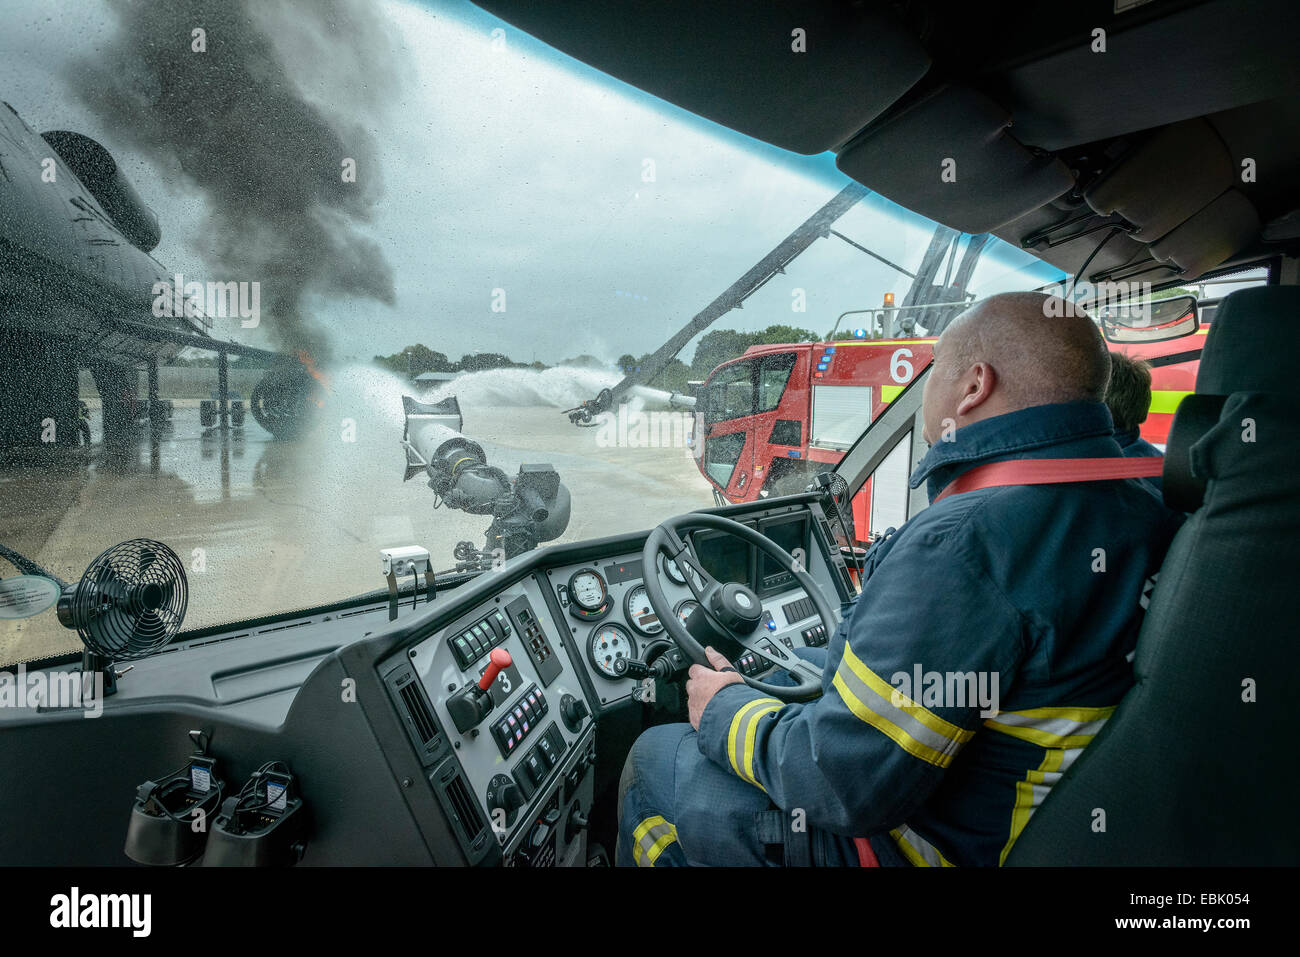 Feuerwehr in Kabine Feuerwehrauto am Flughafen Trainingszentrum Stockfoto